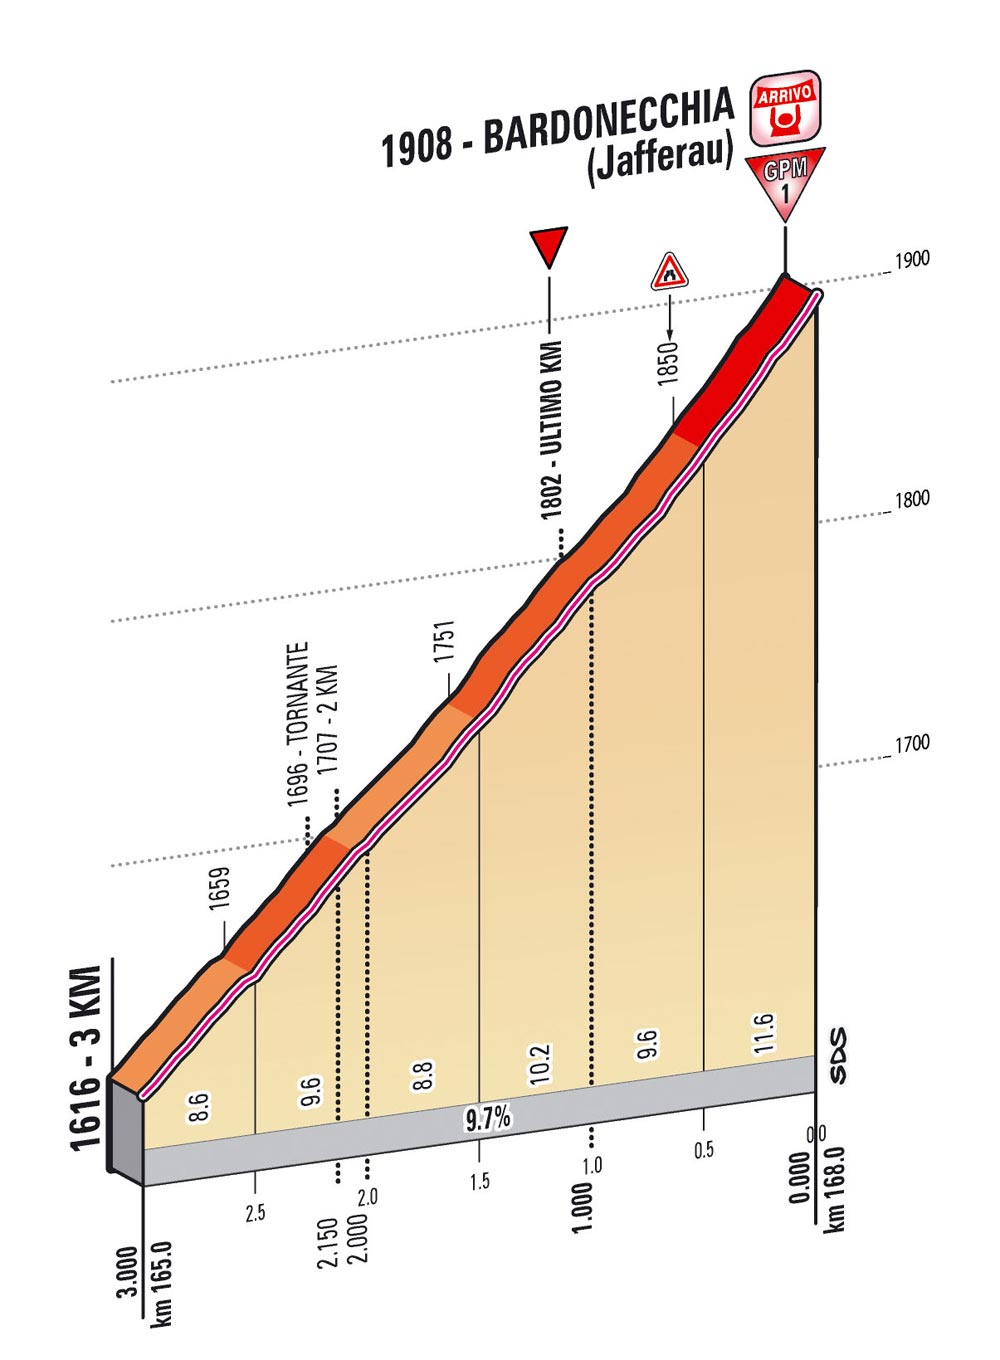 Giro d'Italia 2013 stage 14 last kms